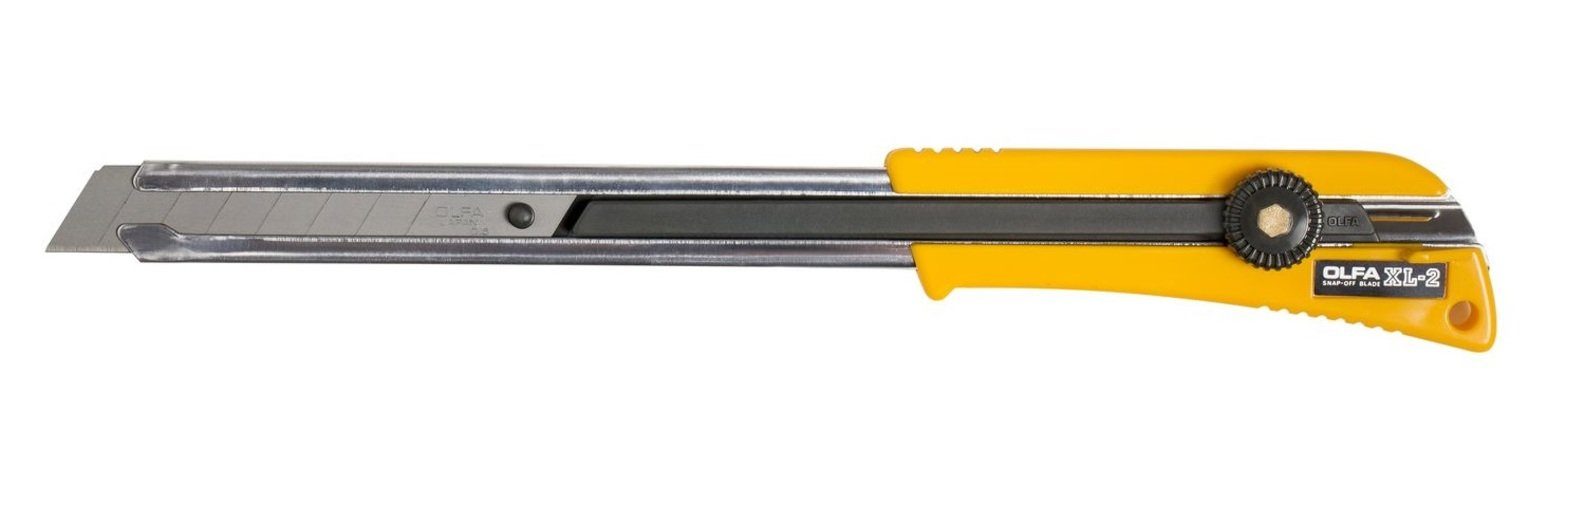 Cutter erreichbare Cuttermesser langer Stellen extra XL-2 OLFA Olfa Klinge schwer mit für 18mm